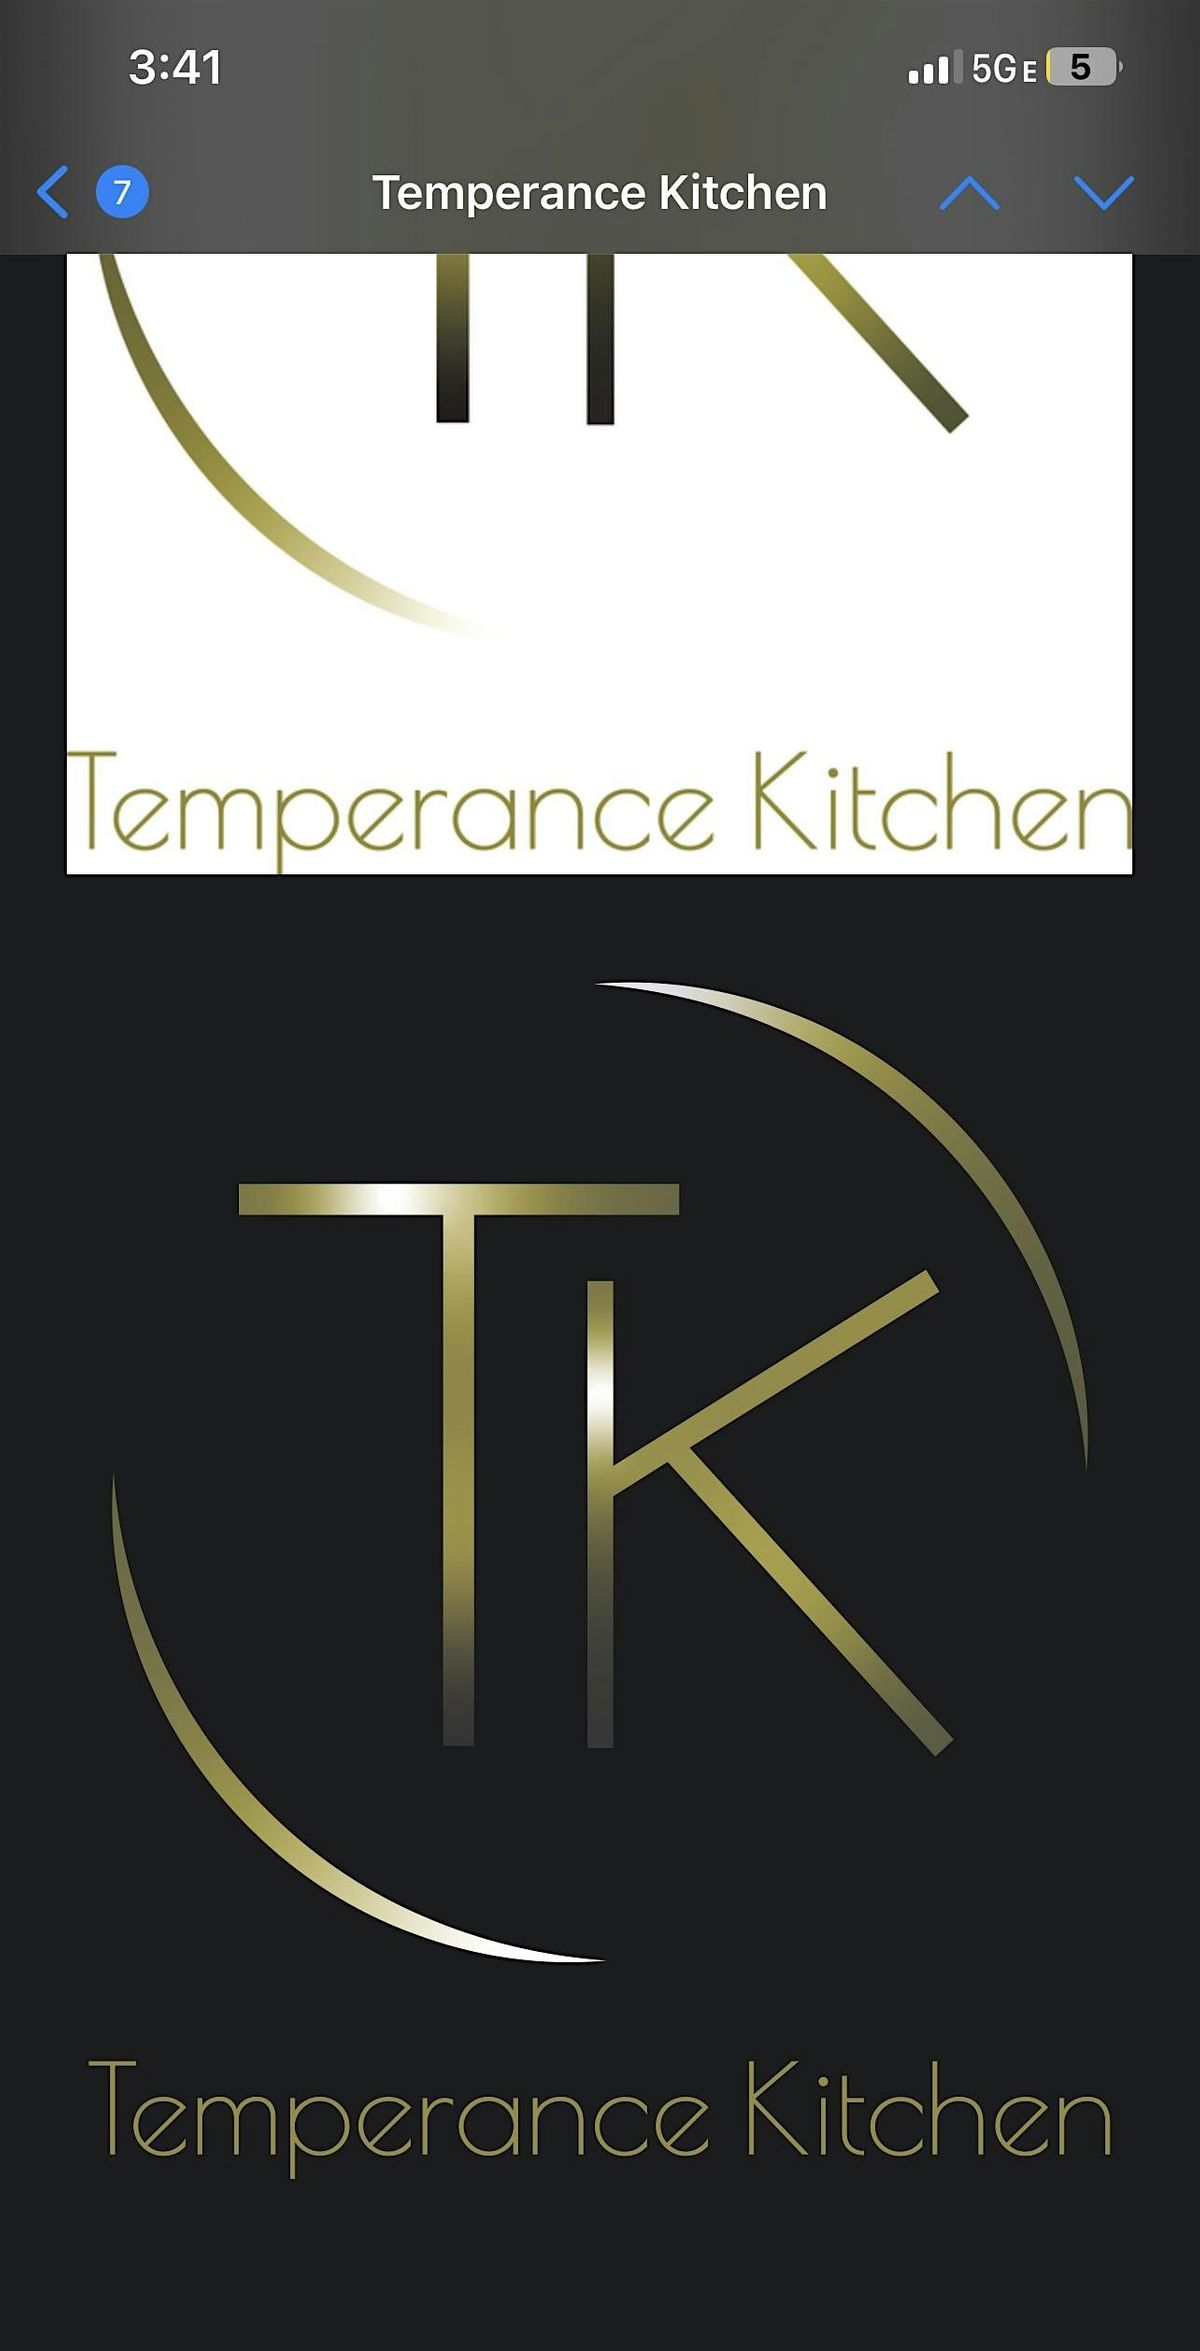 Temperance Kitchen @ mainlander